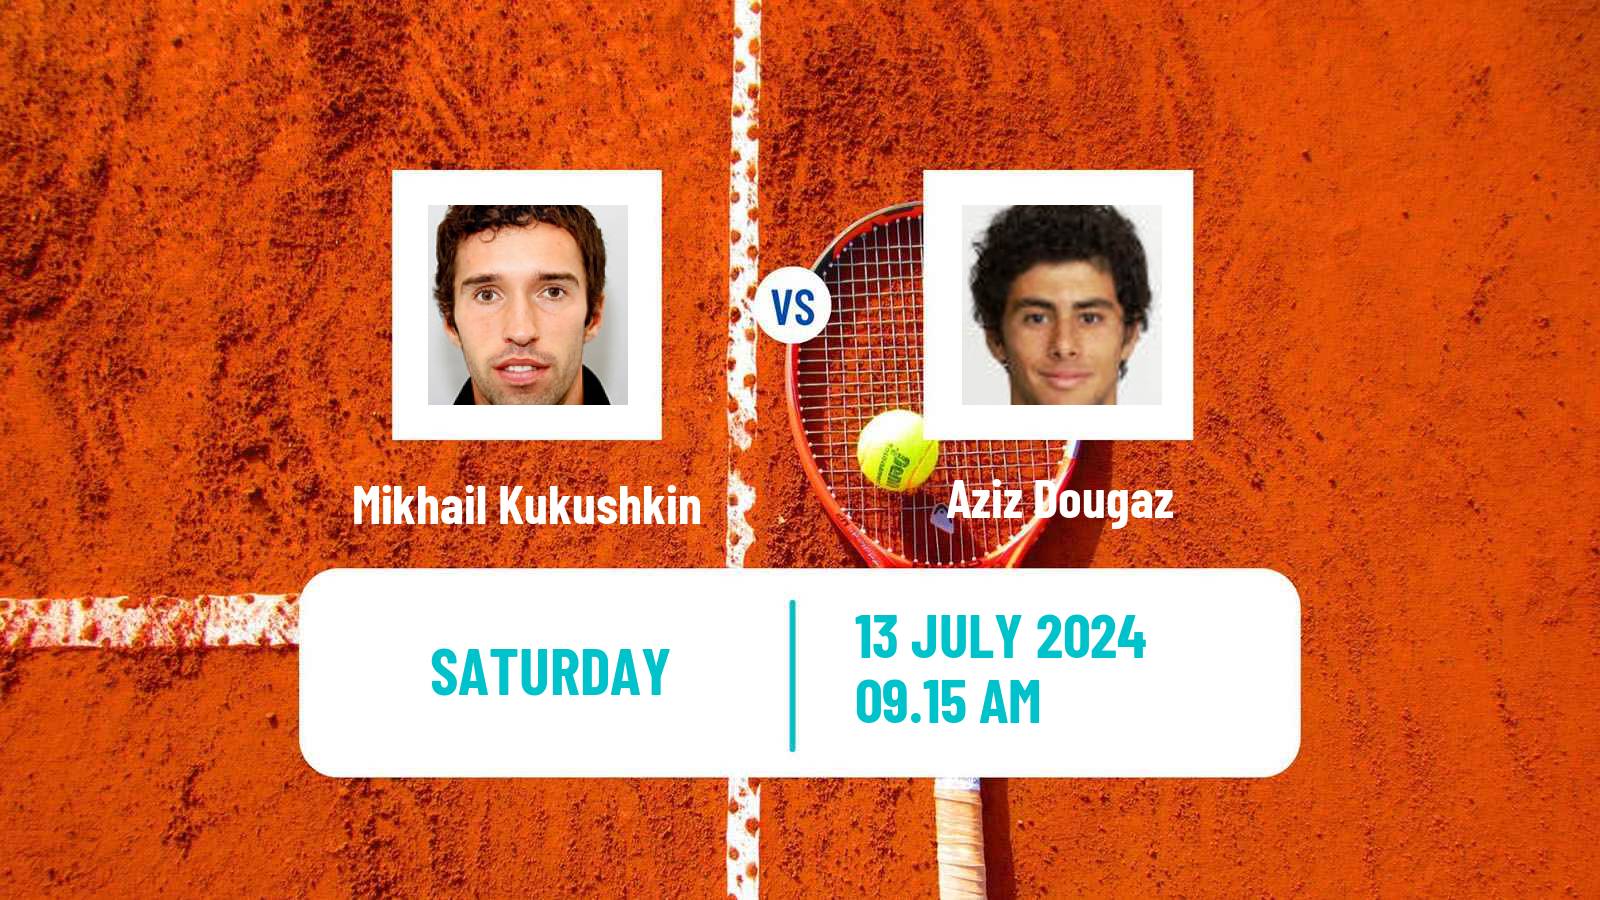 Tennis ATP Hamburg Mikhail Kukushkin - Aziz Dougaz